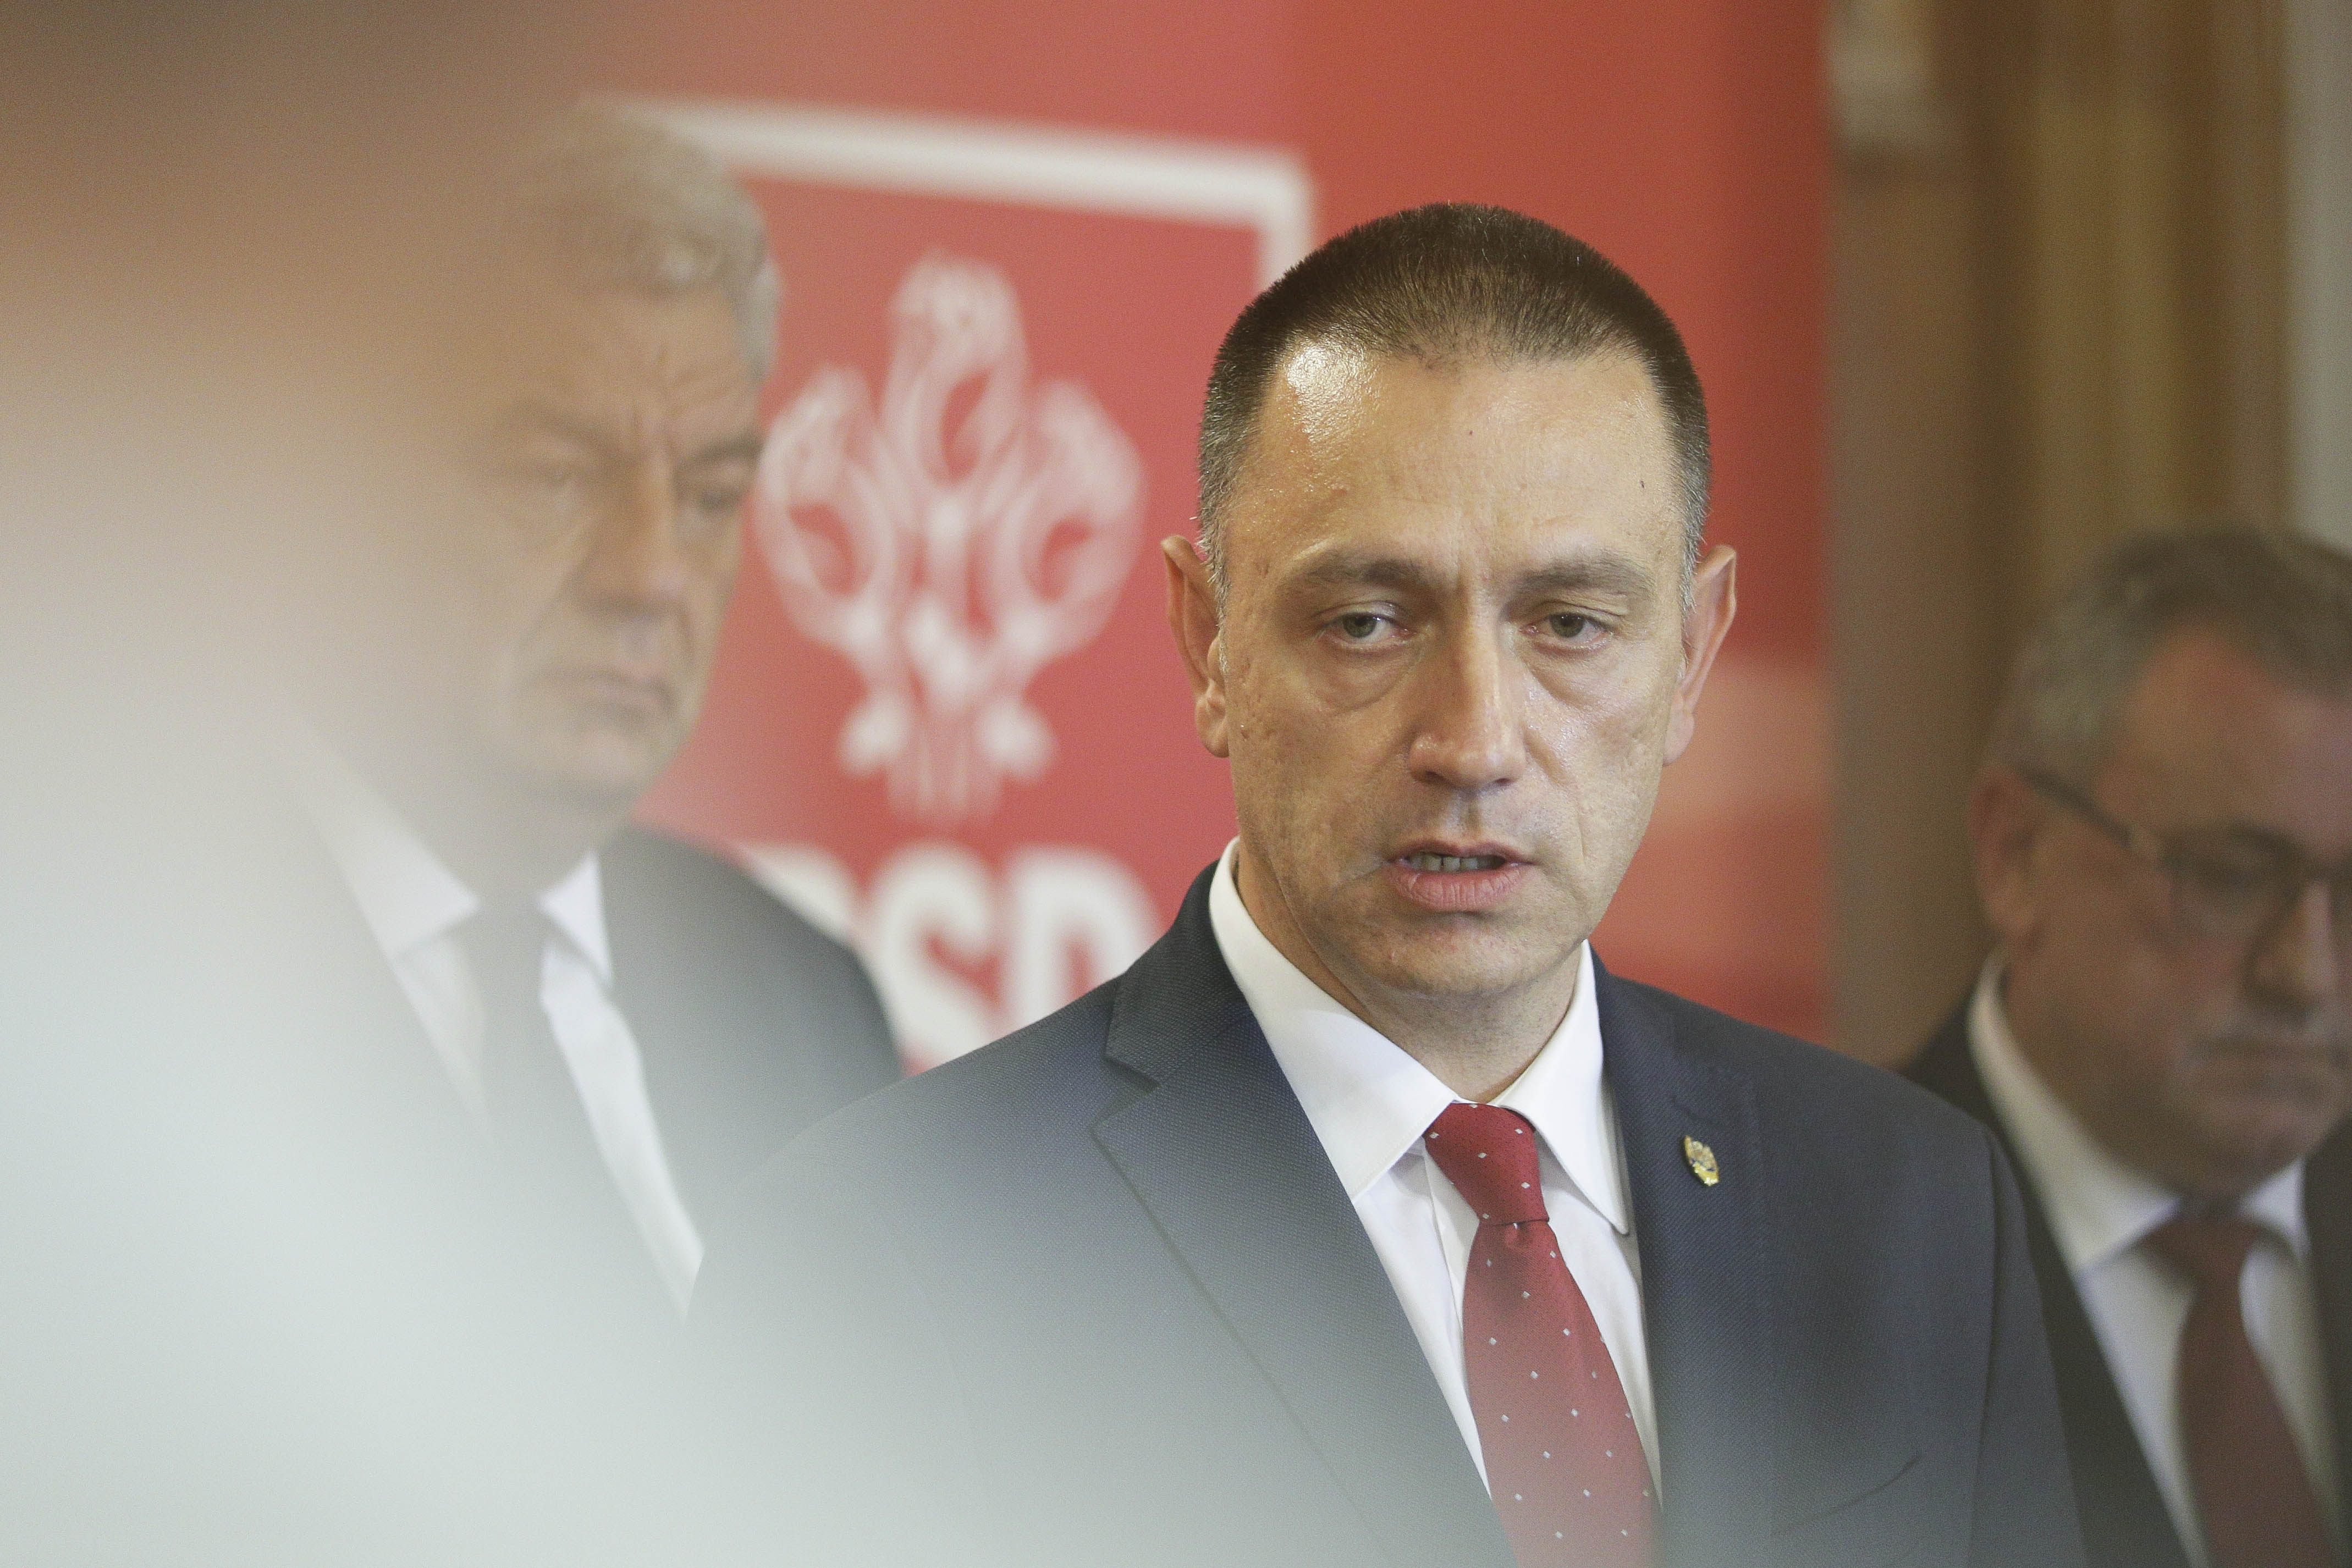 Noii miniştri de la Apărare şi Economie, Mihai Fifor şi Gheorghe Şimon, au depus jurământul la Palatul Cotroceni